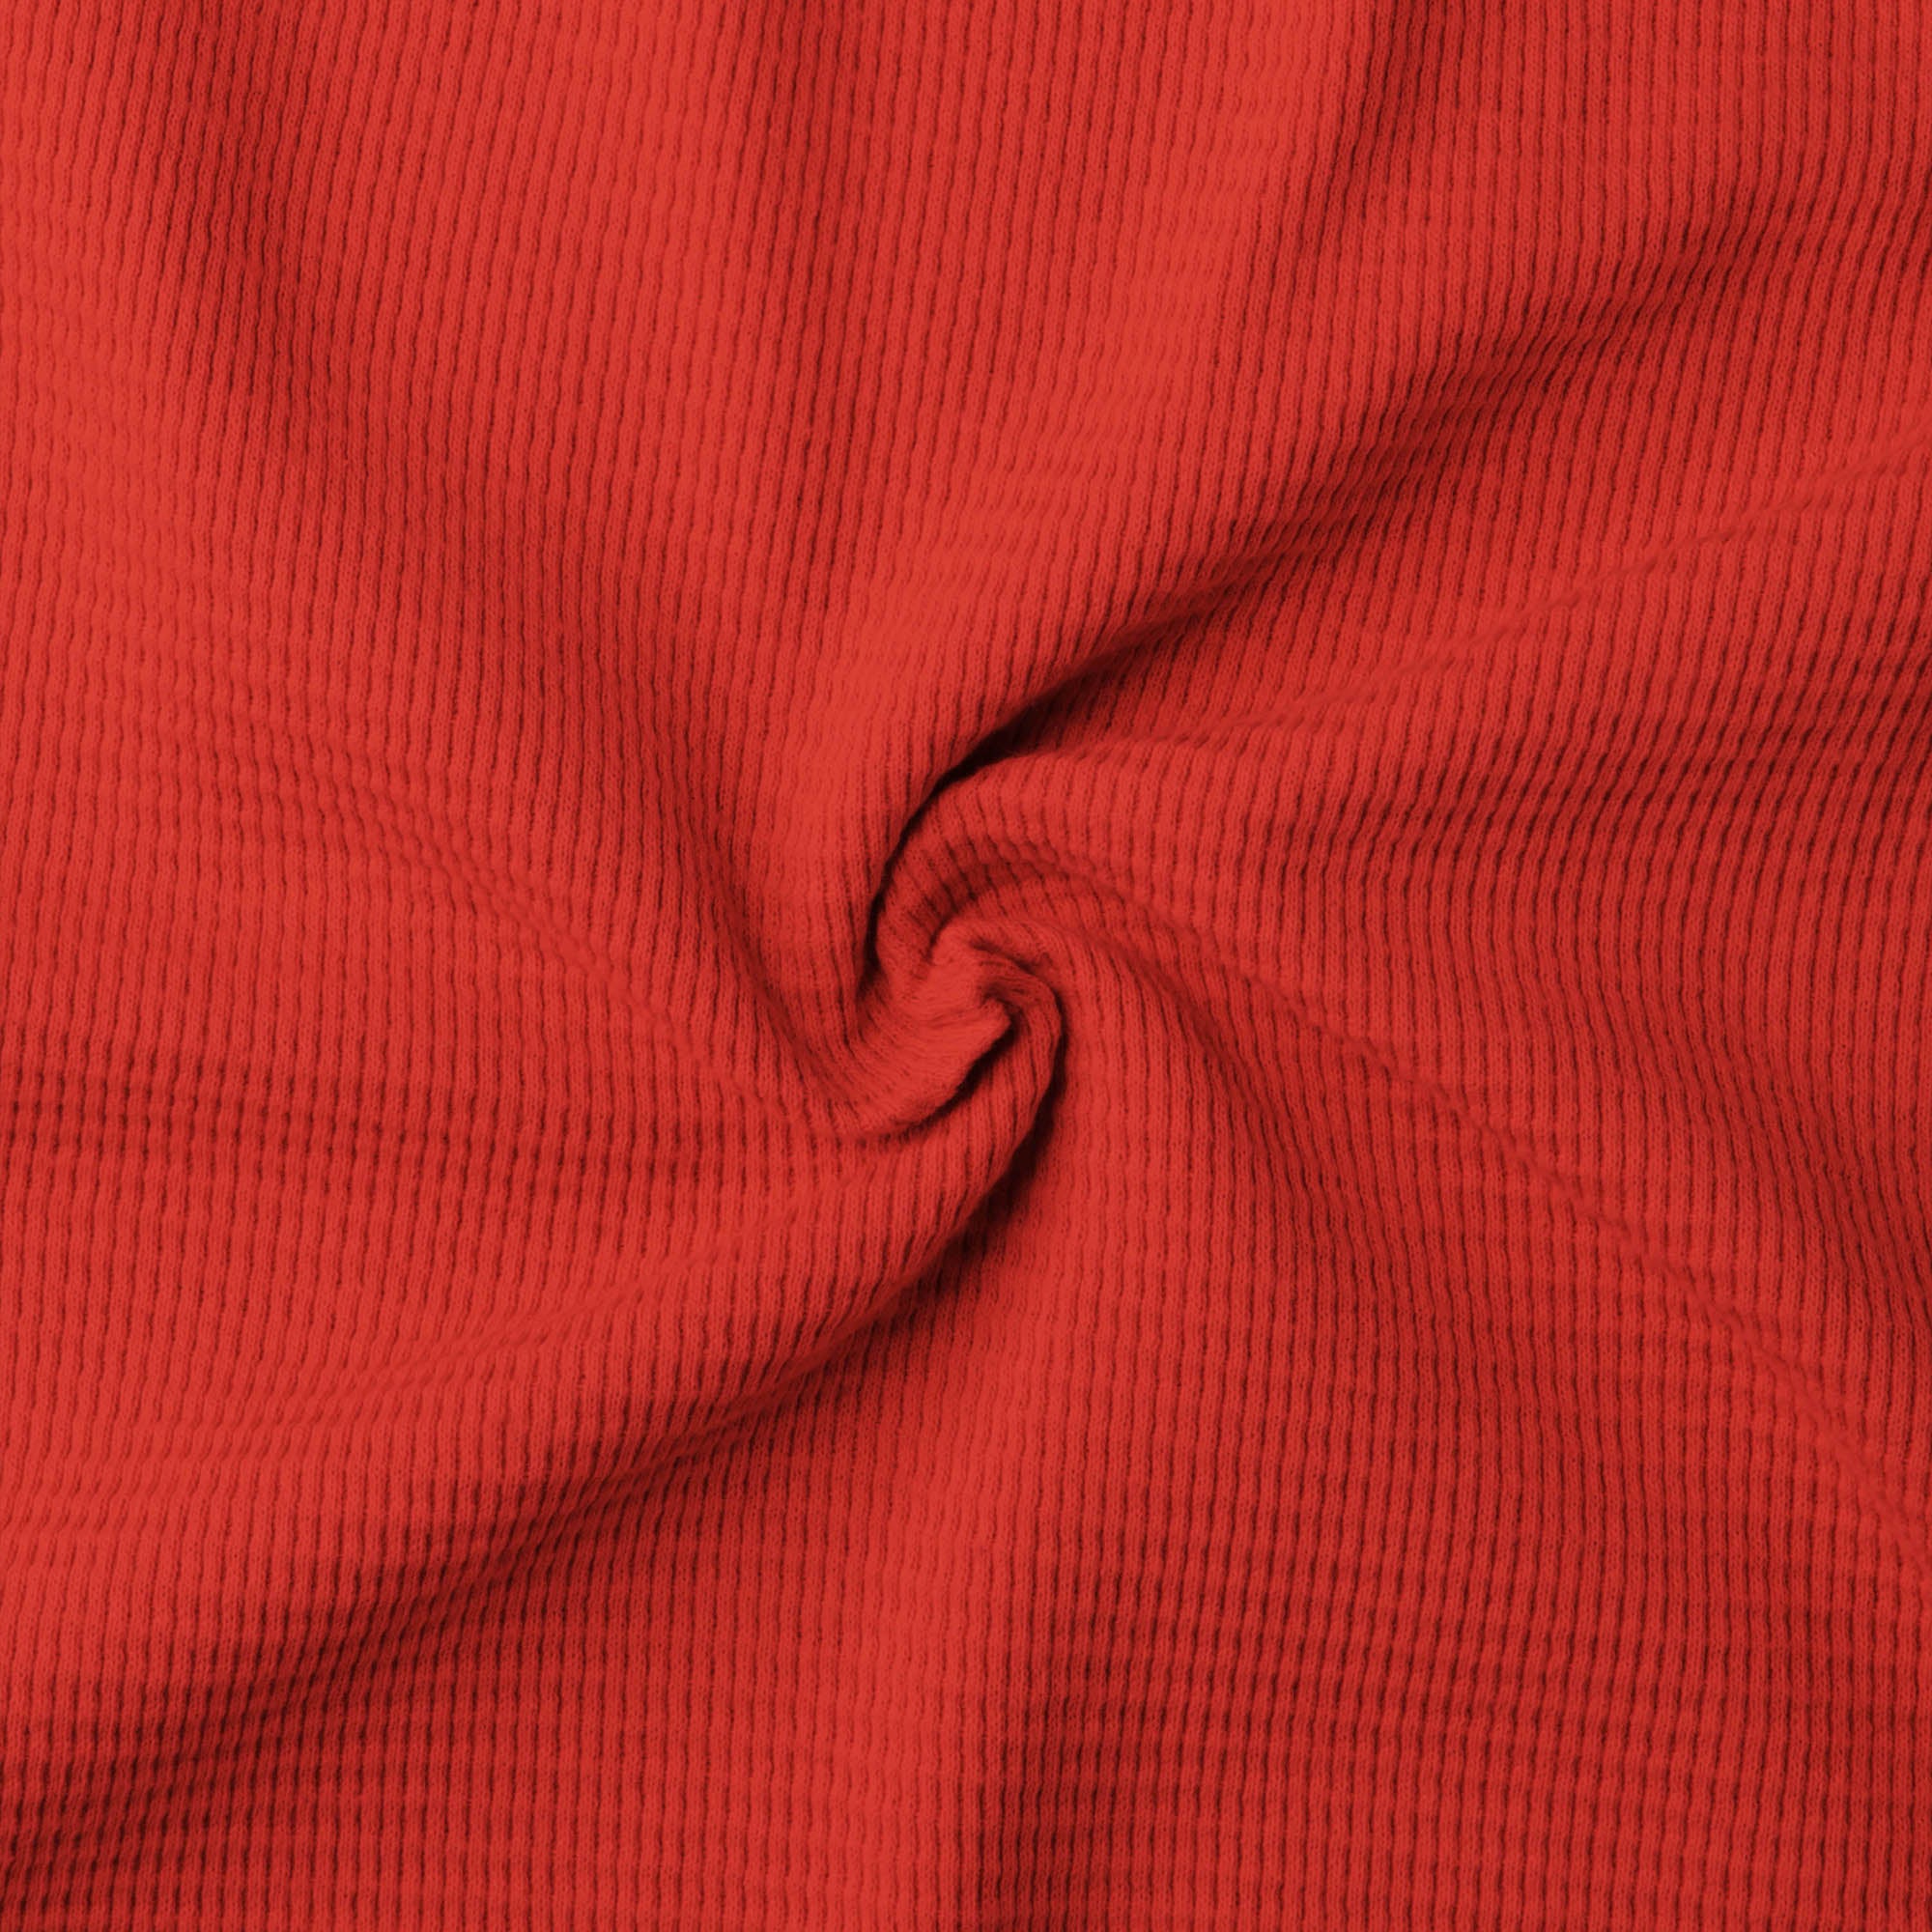 thermal shirt_thermal long sleeve_mens thermal shirt_long sleeve thermal shirts_mens thermal long sleeve_thermal clothing mens_Red